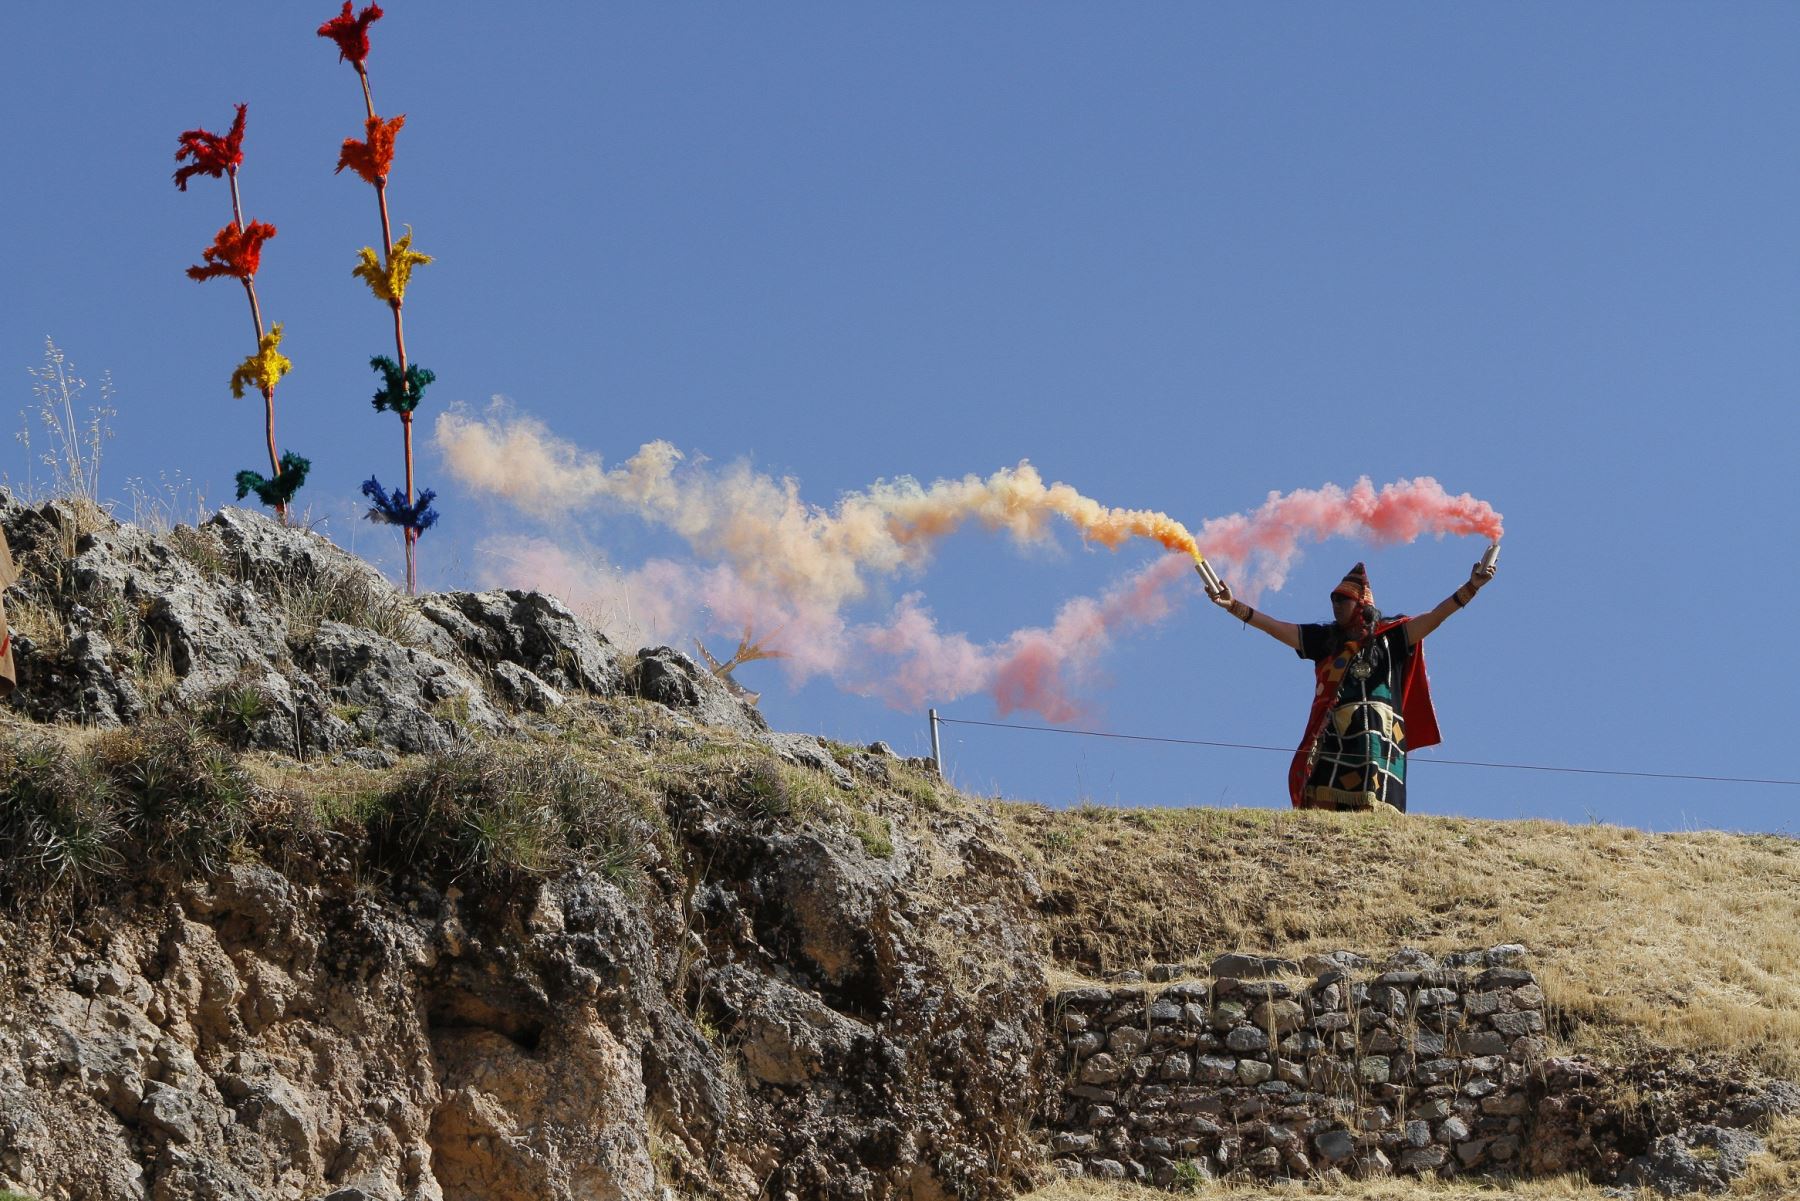 Inti Raymi o “fiesta del Sol” festividad religiosa más importante durante el tiempo de los Incas, en la ciudad del Cuzco.Foto: ANDINA/ Cortesia Percy Hurtado